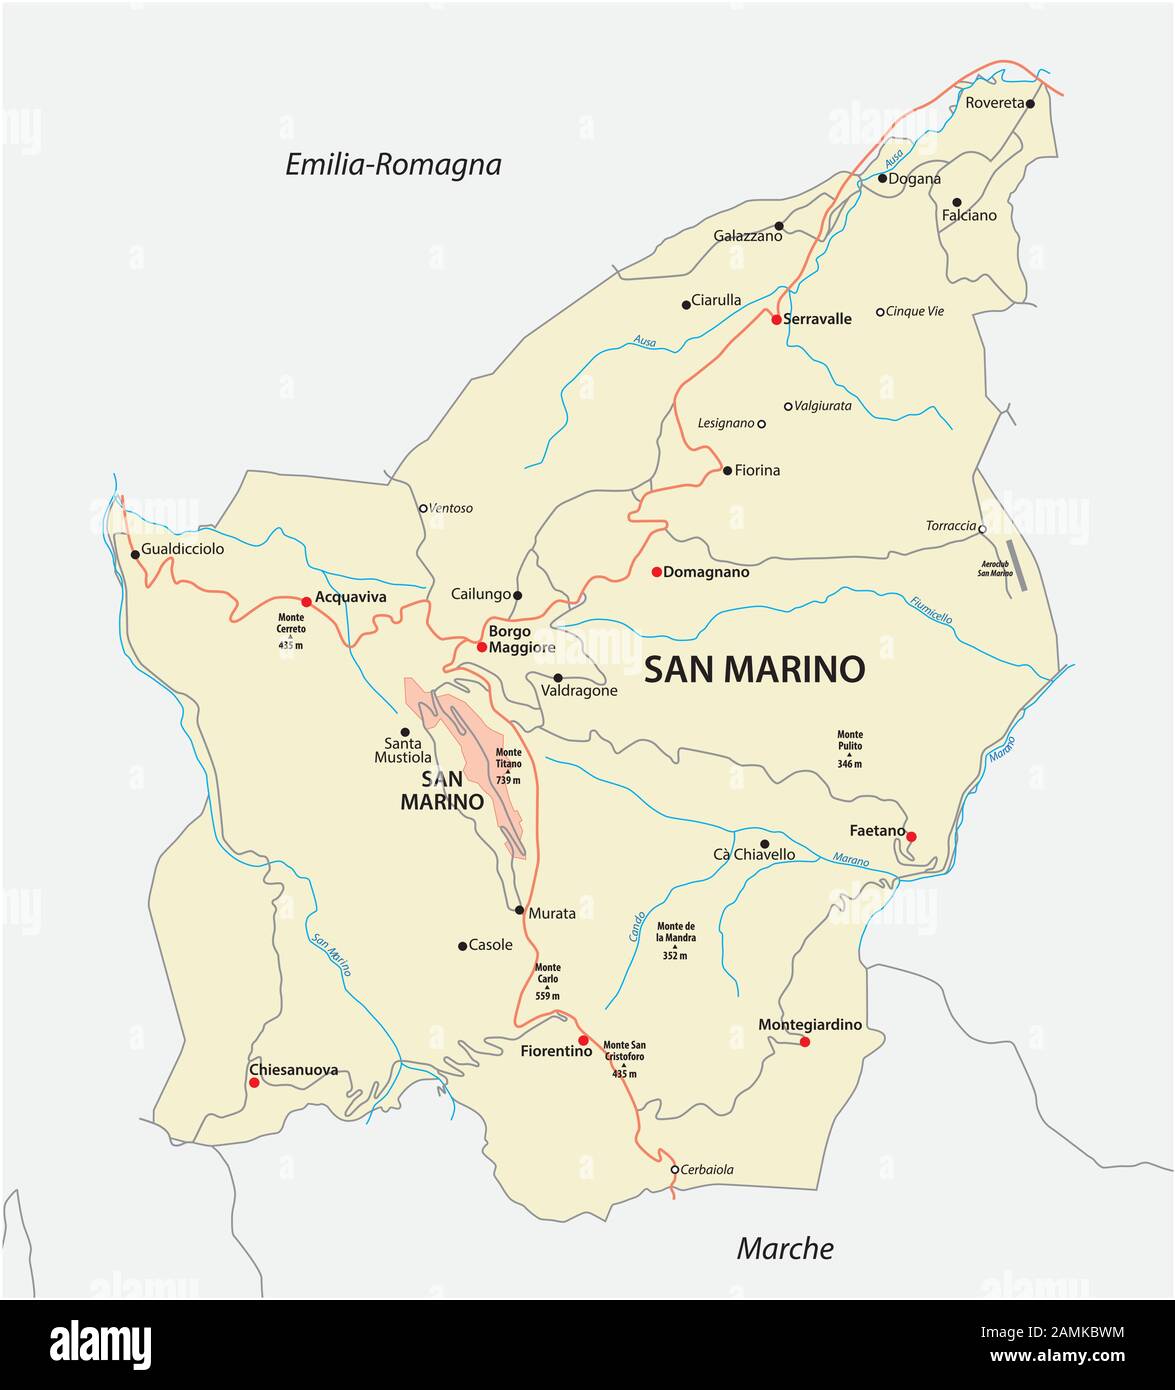 Road map della Repubblica di San Marino Illustrazione Vettoriale